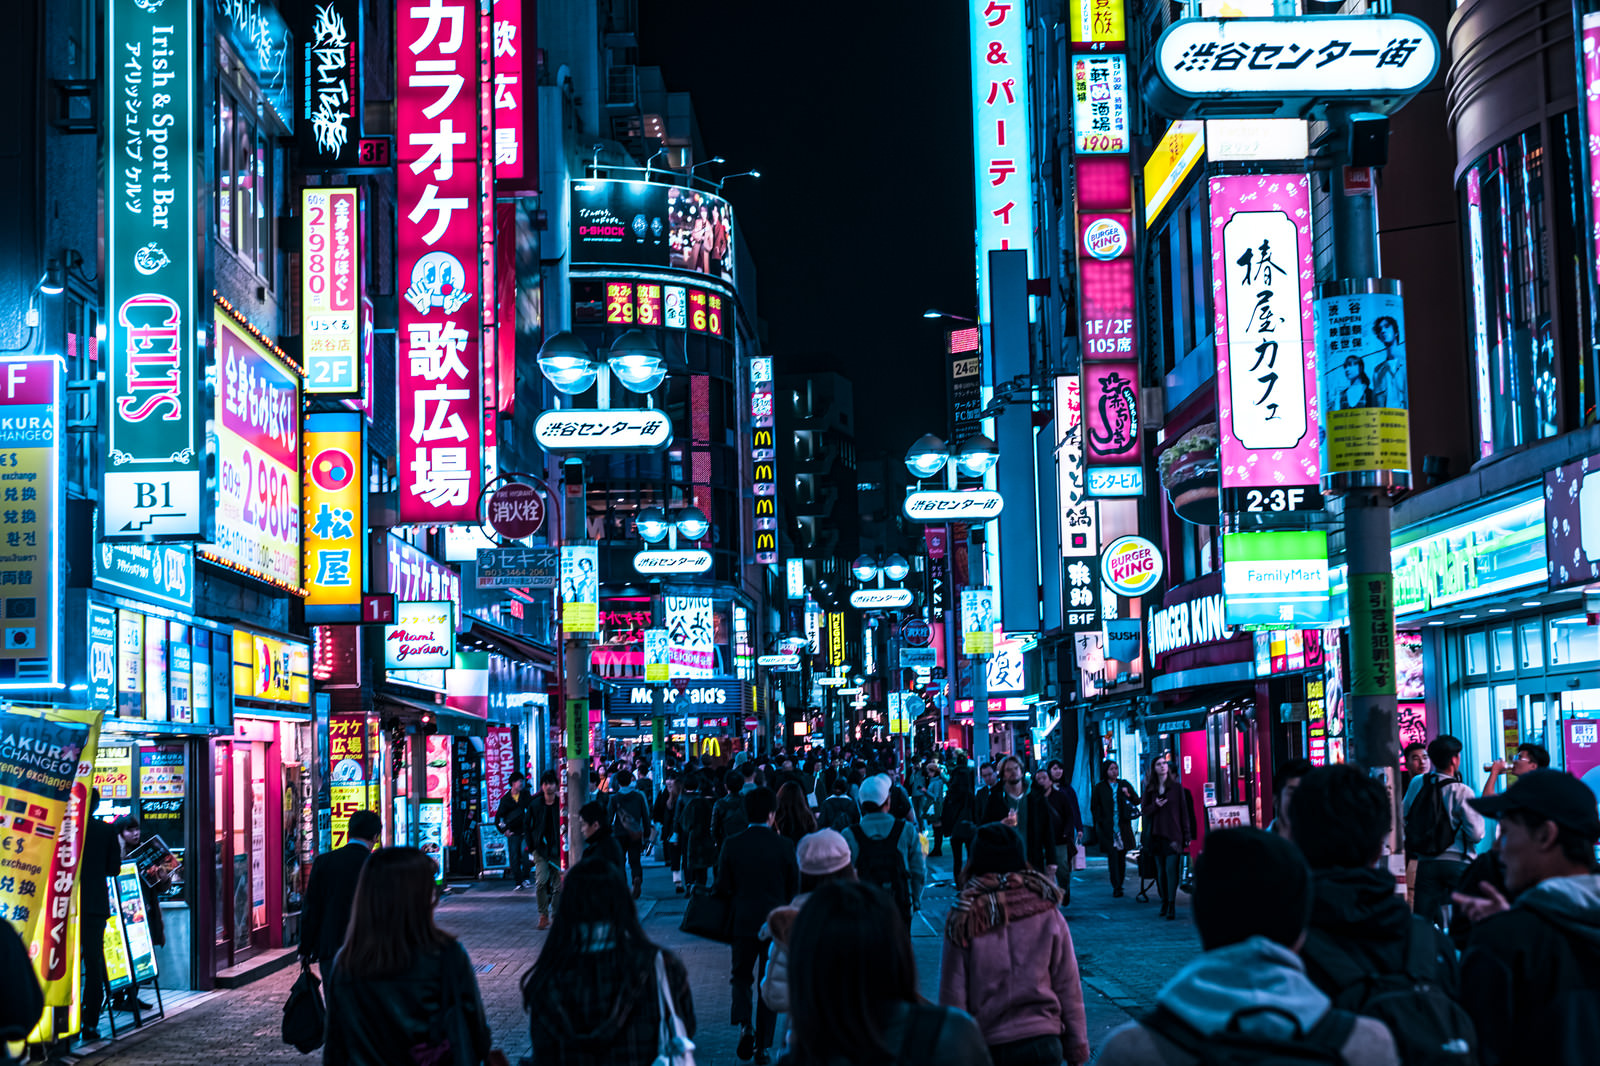 「渋谷センター街のサイバーパンク | フリー素材のぱくたそ」の写真